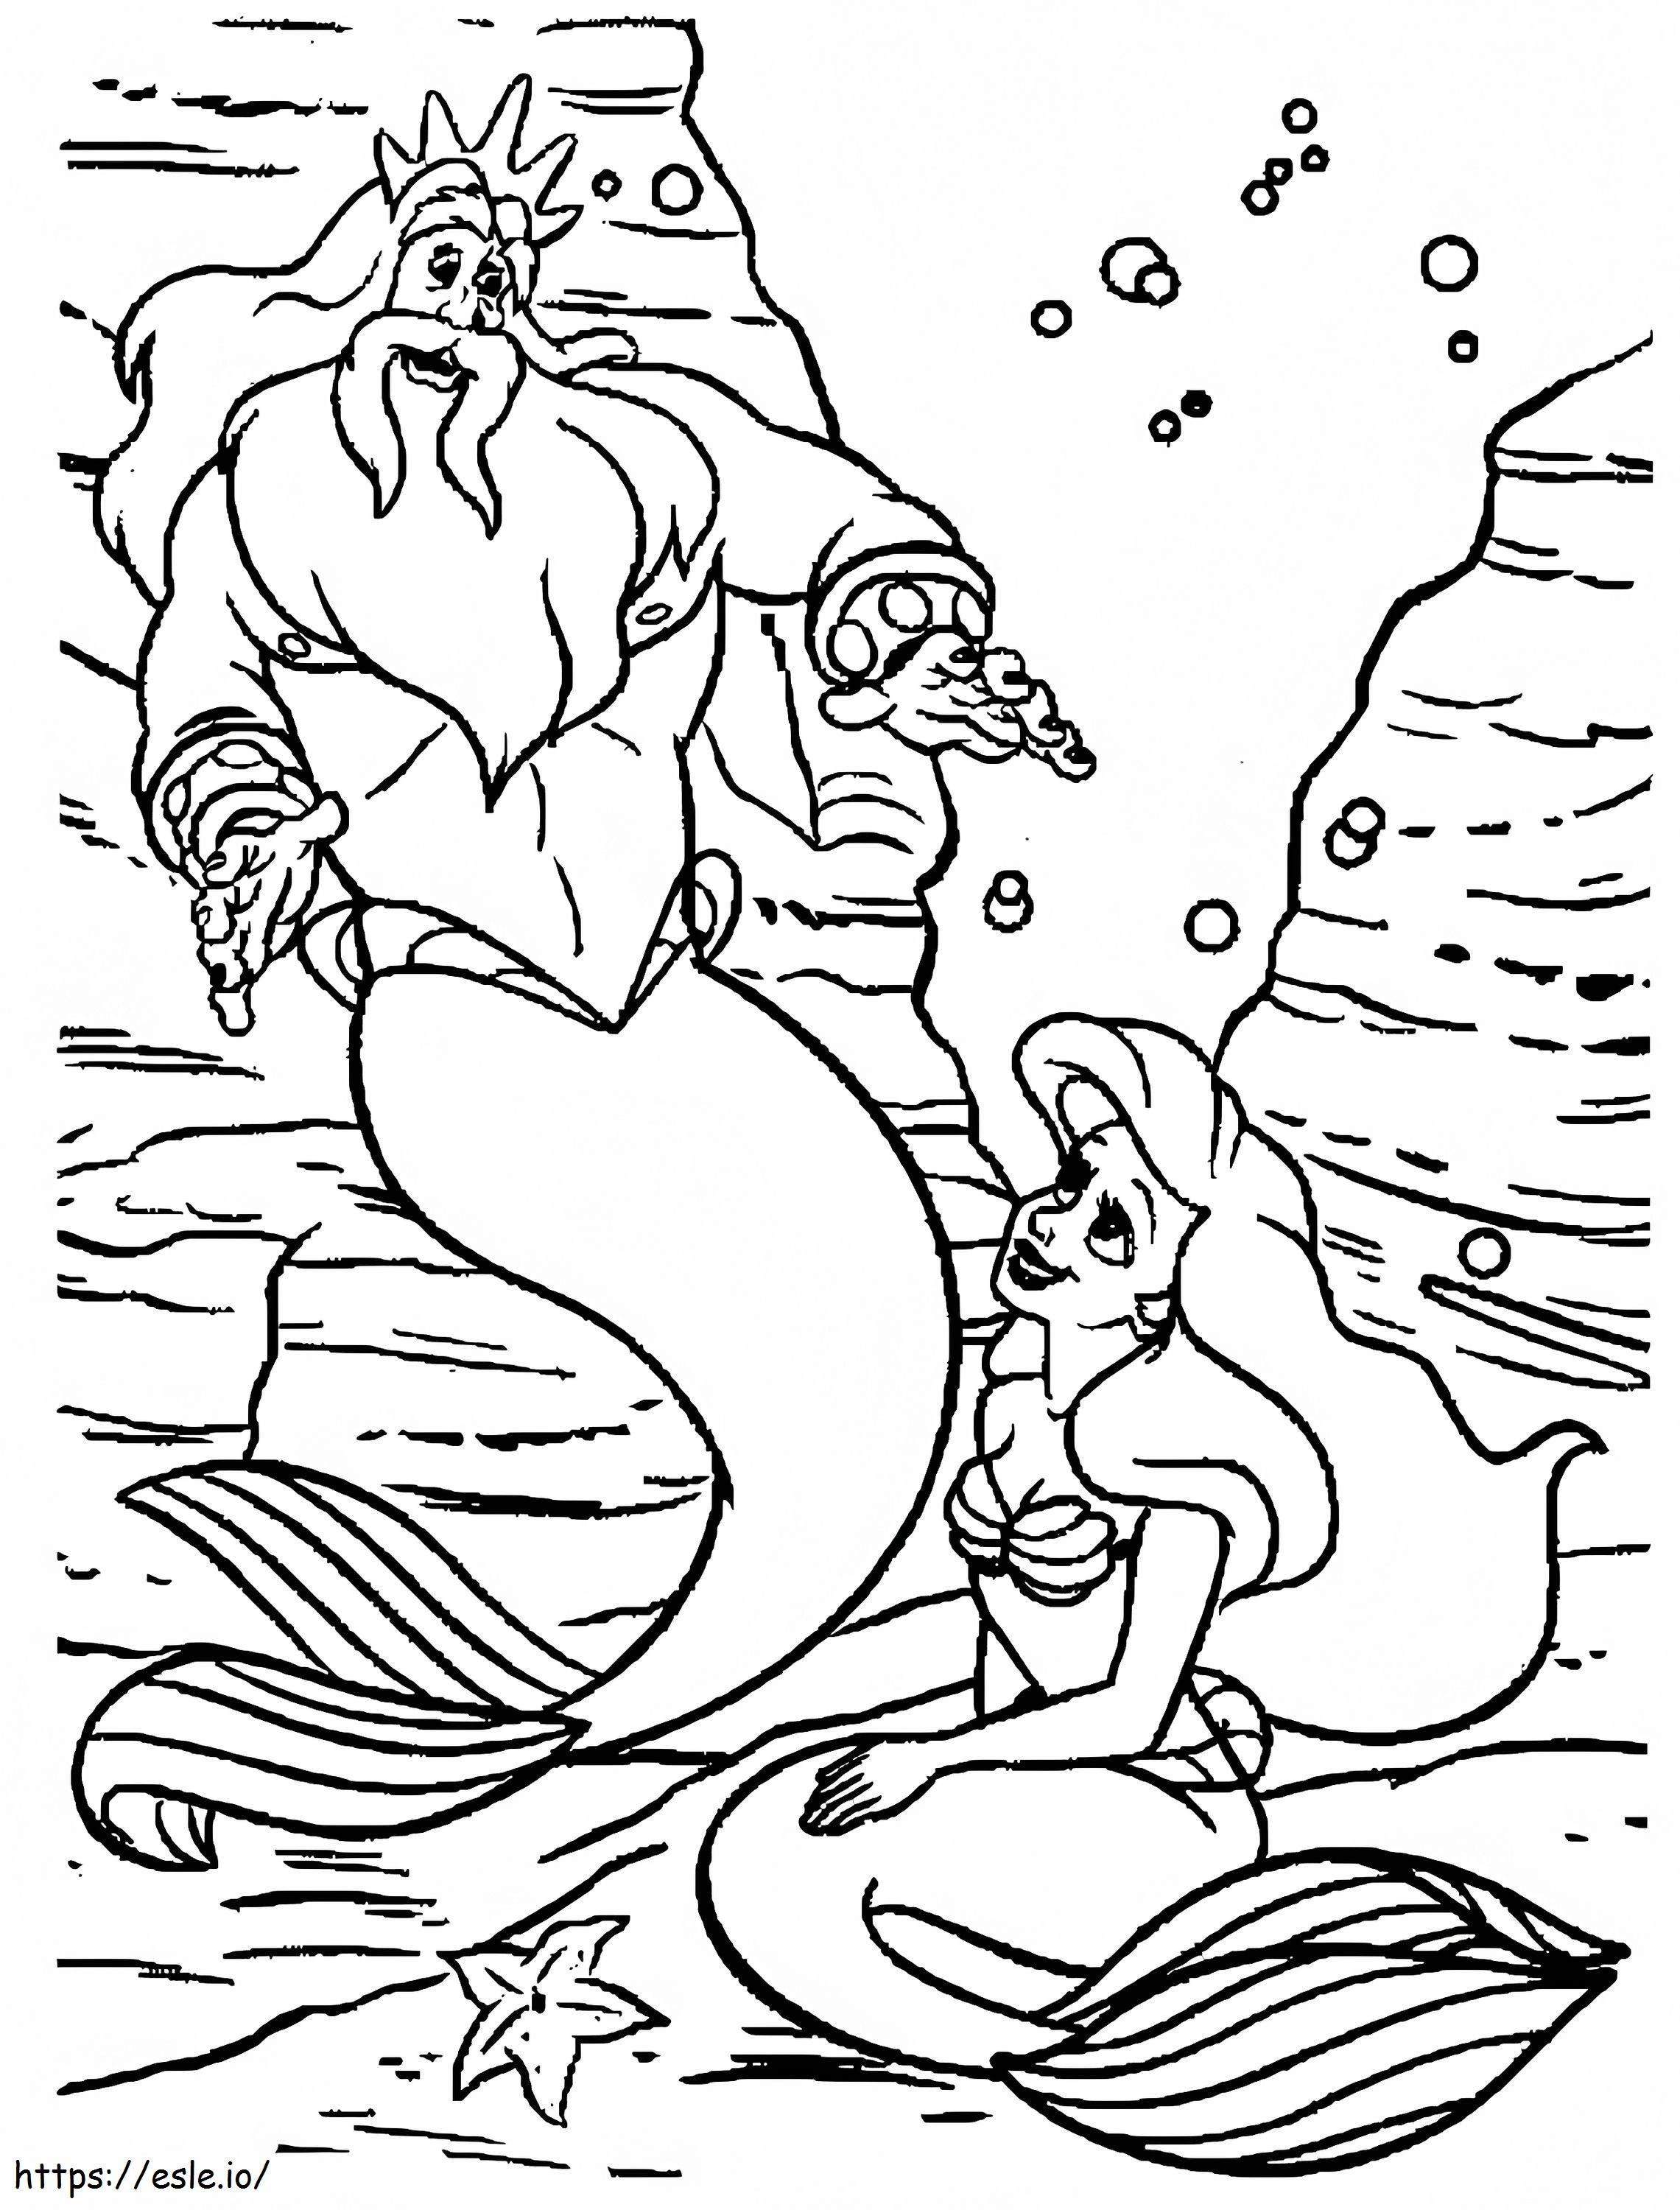 Disegno Sirena E Padre da colorare